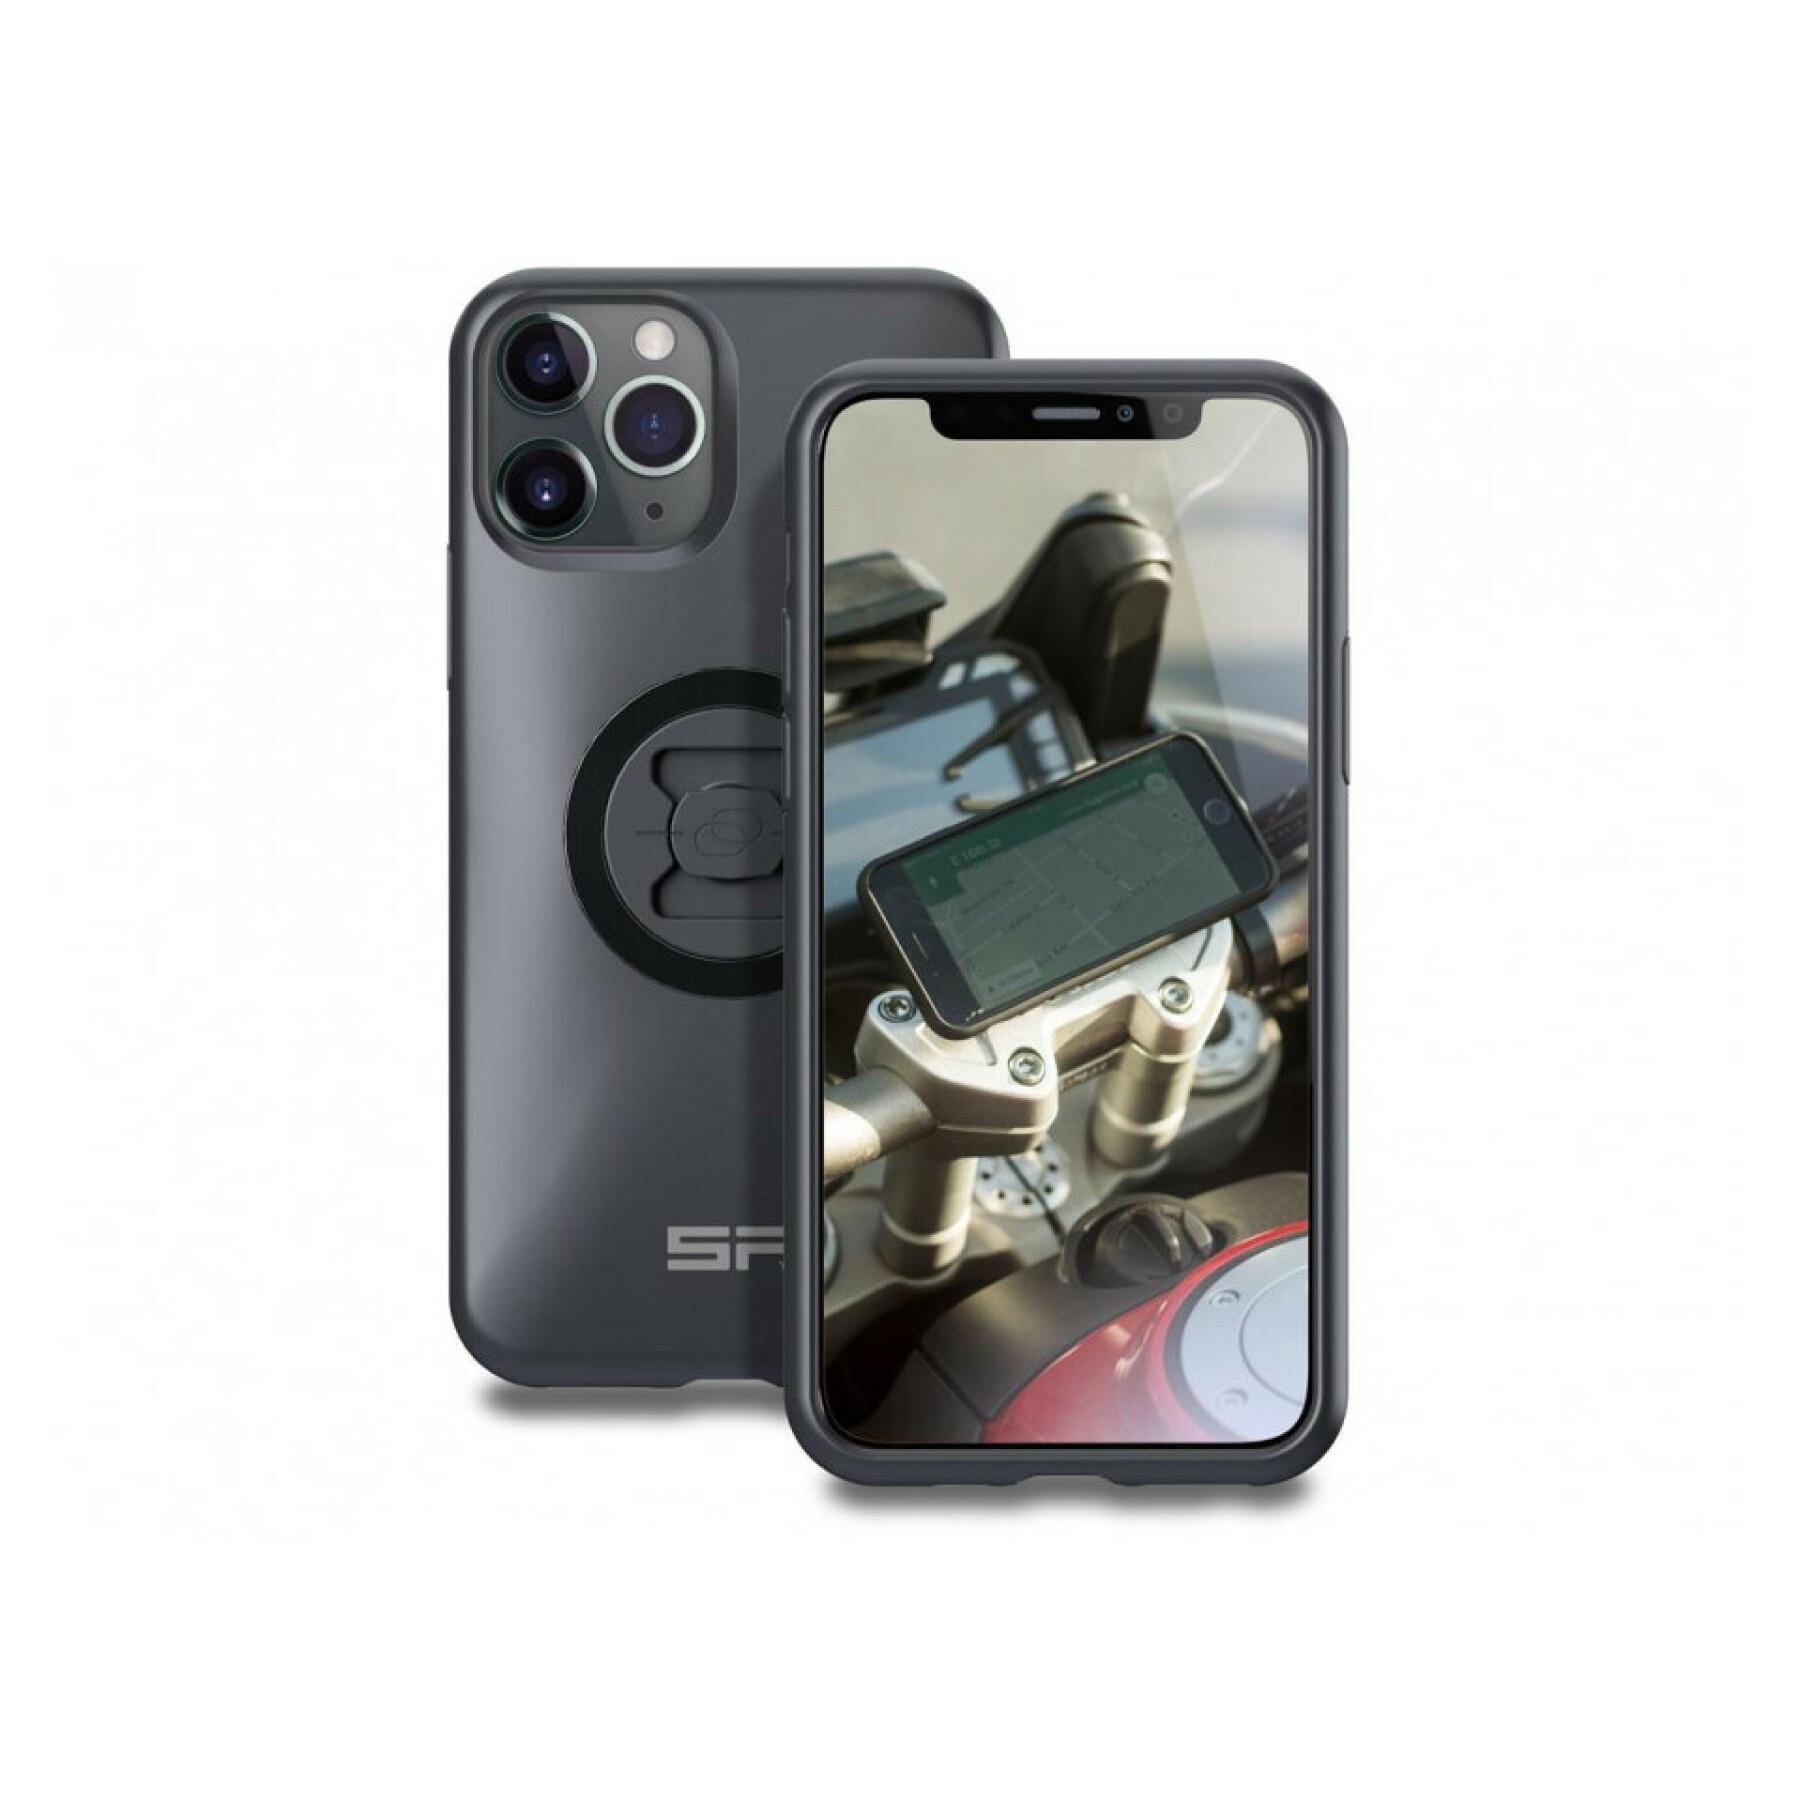 Soporte para smartphone moto Sp-Connect Pack Sp-Connect Moto Bundle fijación en manillar Iphone 11 Pro